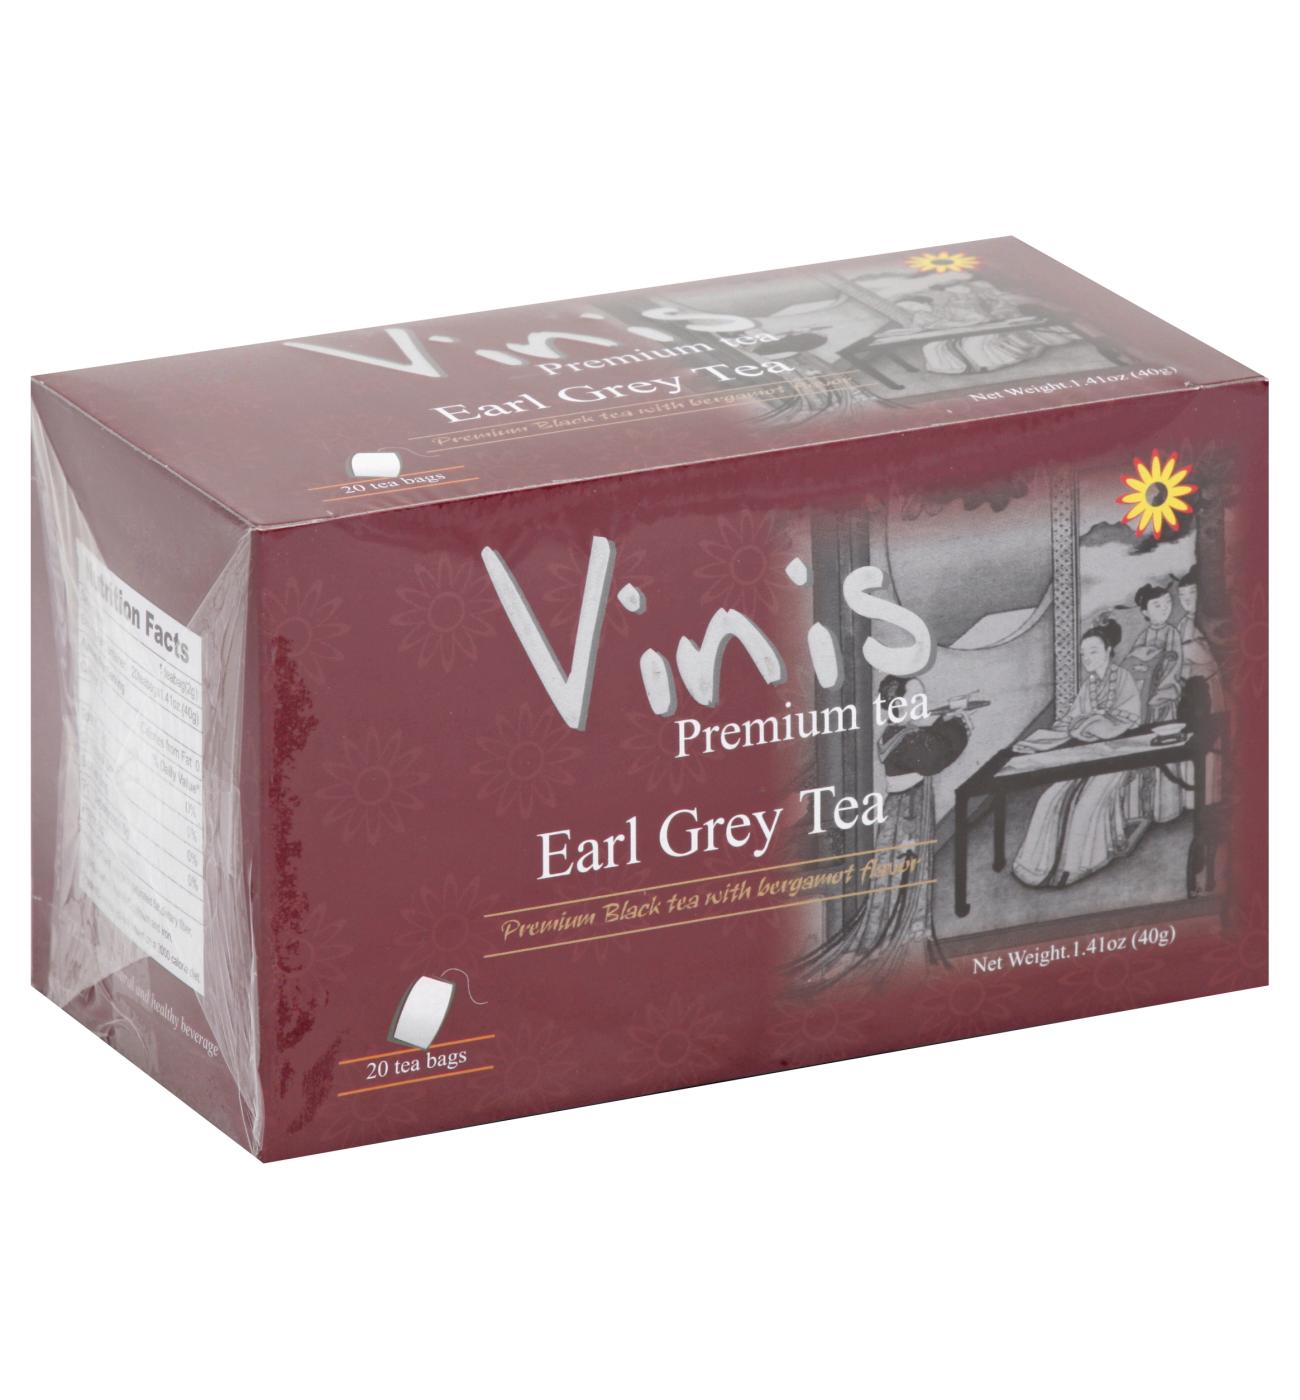 Vinis Earl Grey Tea Bags; image 1 of 2